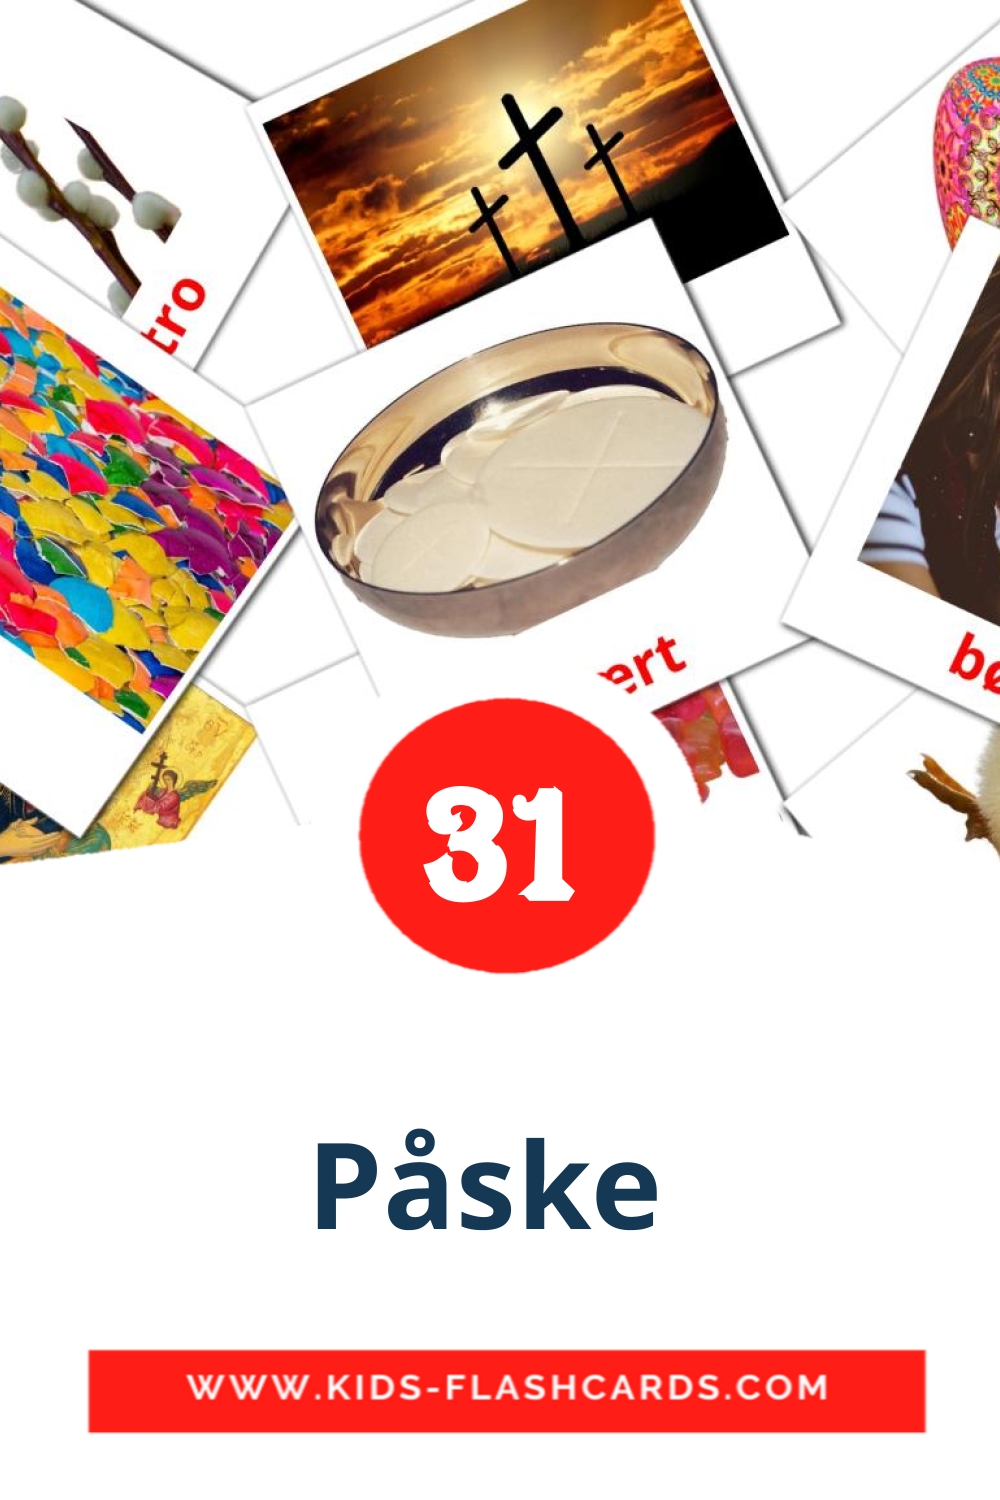 31 tarjetas didacticas de Påske  para el jardín de infancia en dansk